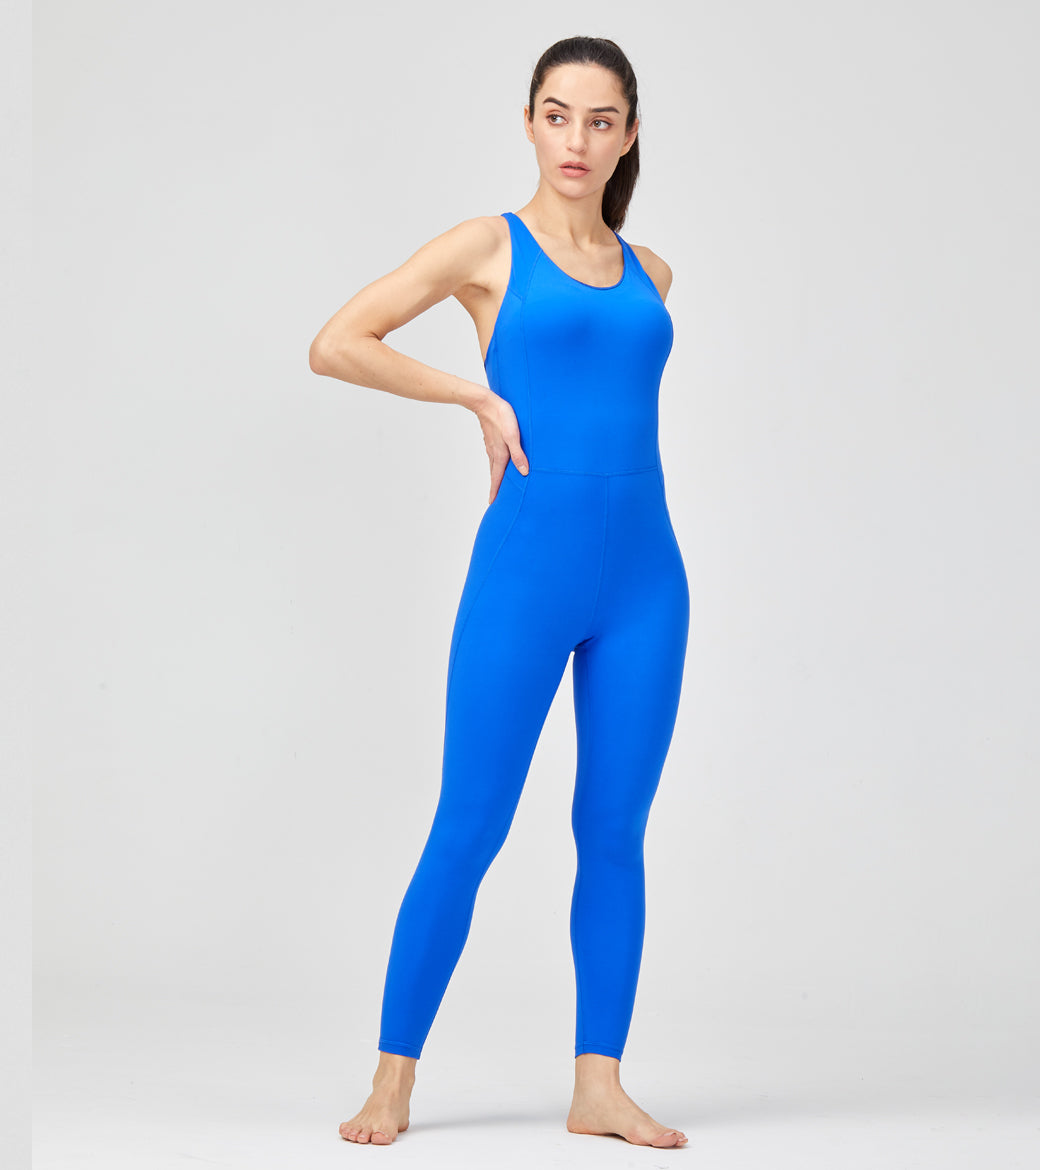 LOVESOFT Women's Royal Blue Sleeveless Backless Yoga Jumpsuit Bodysuit